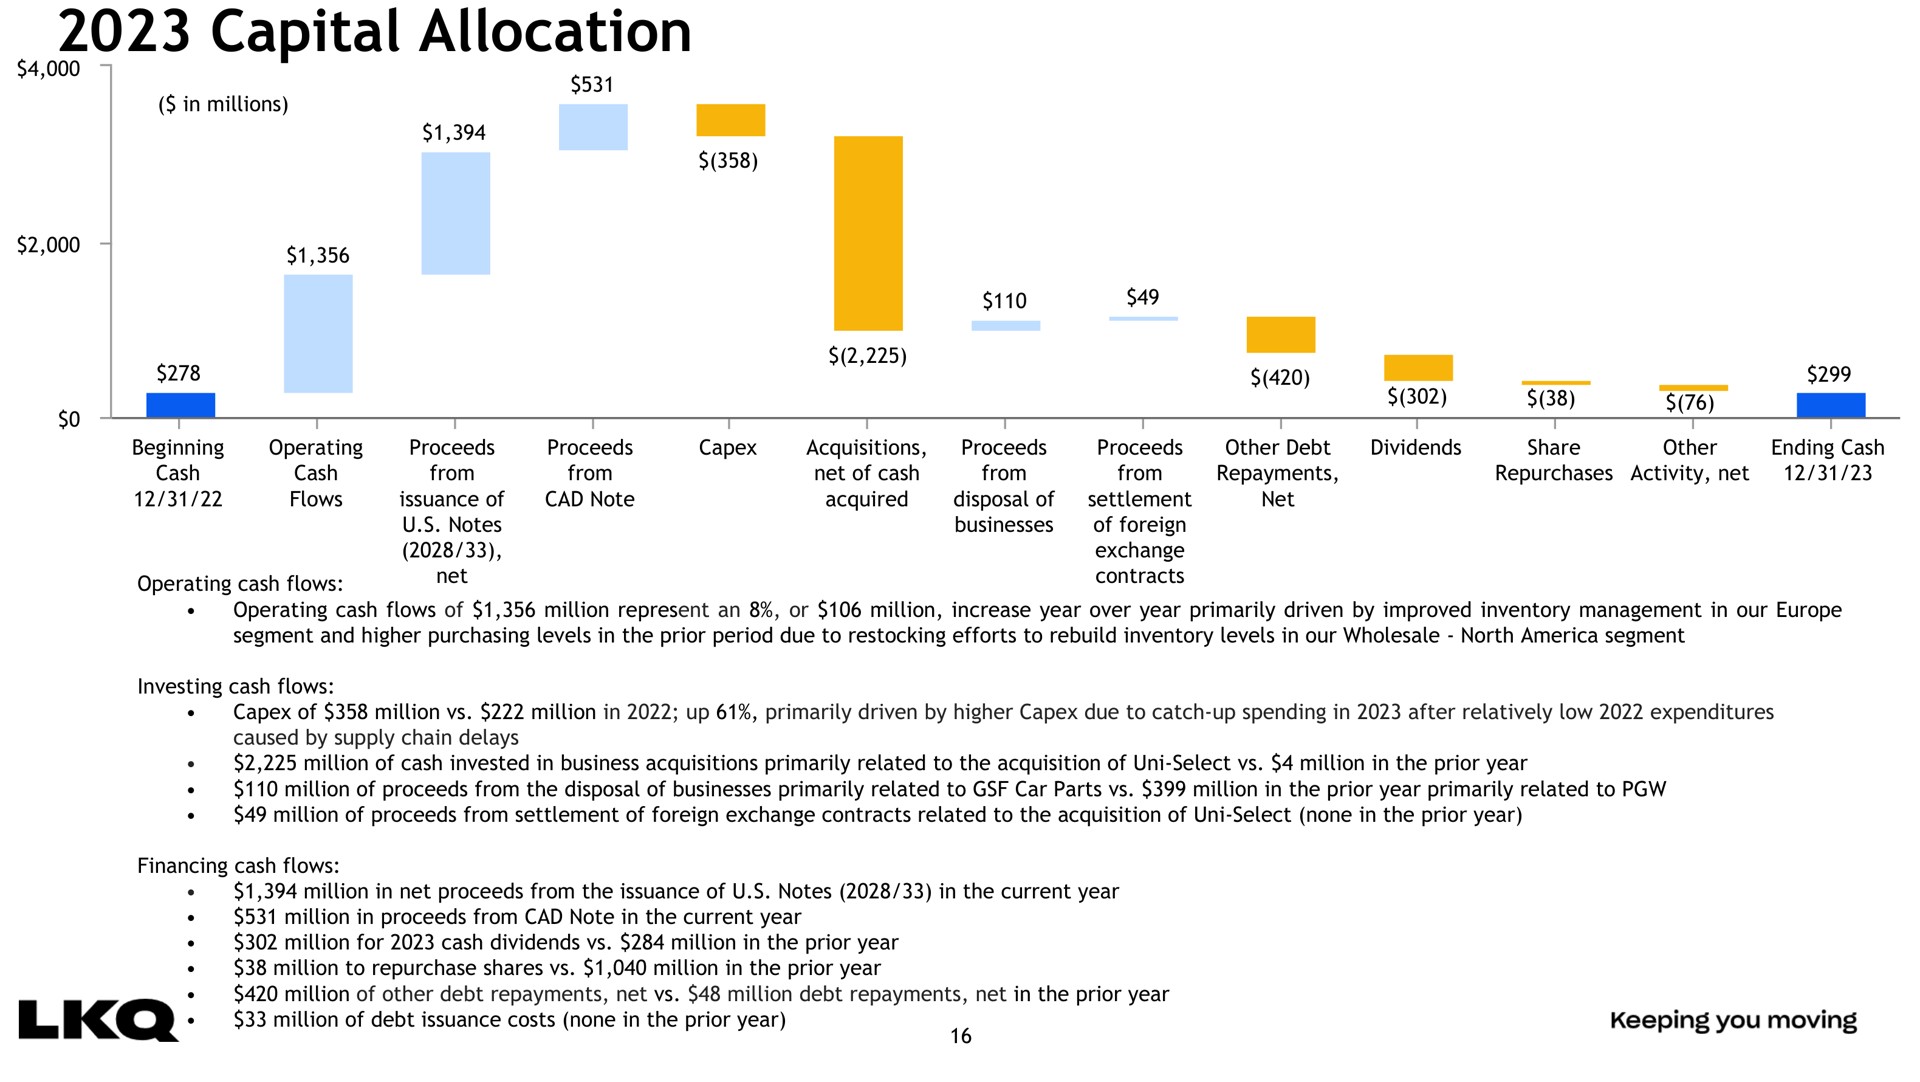 capital allocation | LKQ